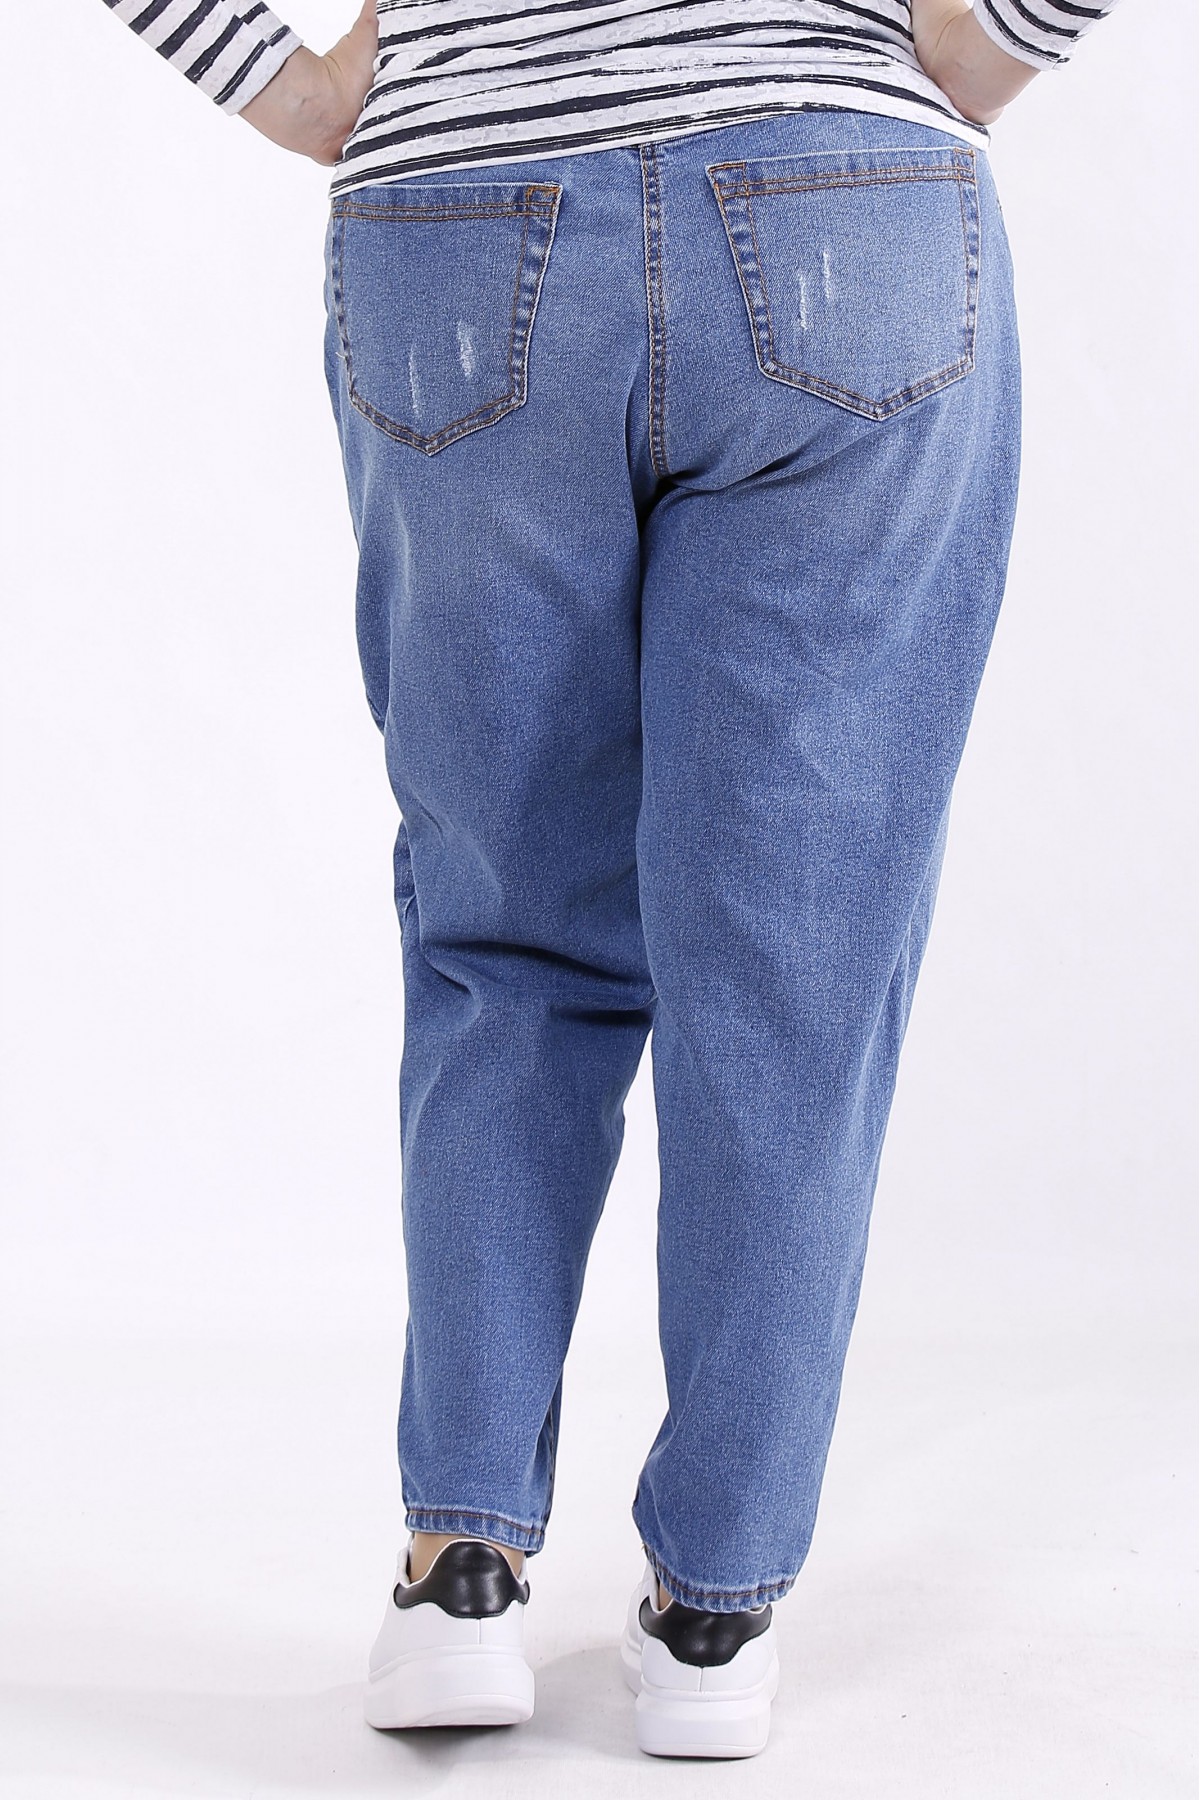 Свободные голубые джинсы, зауженные к низу 56-74